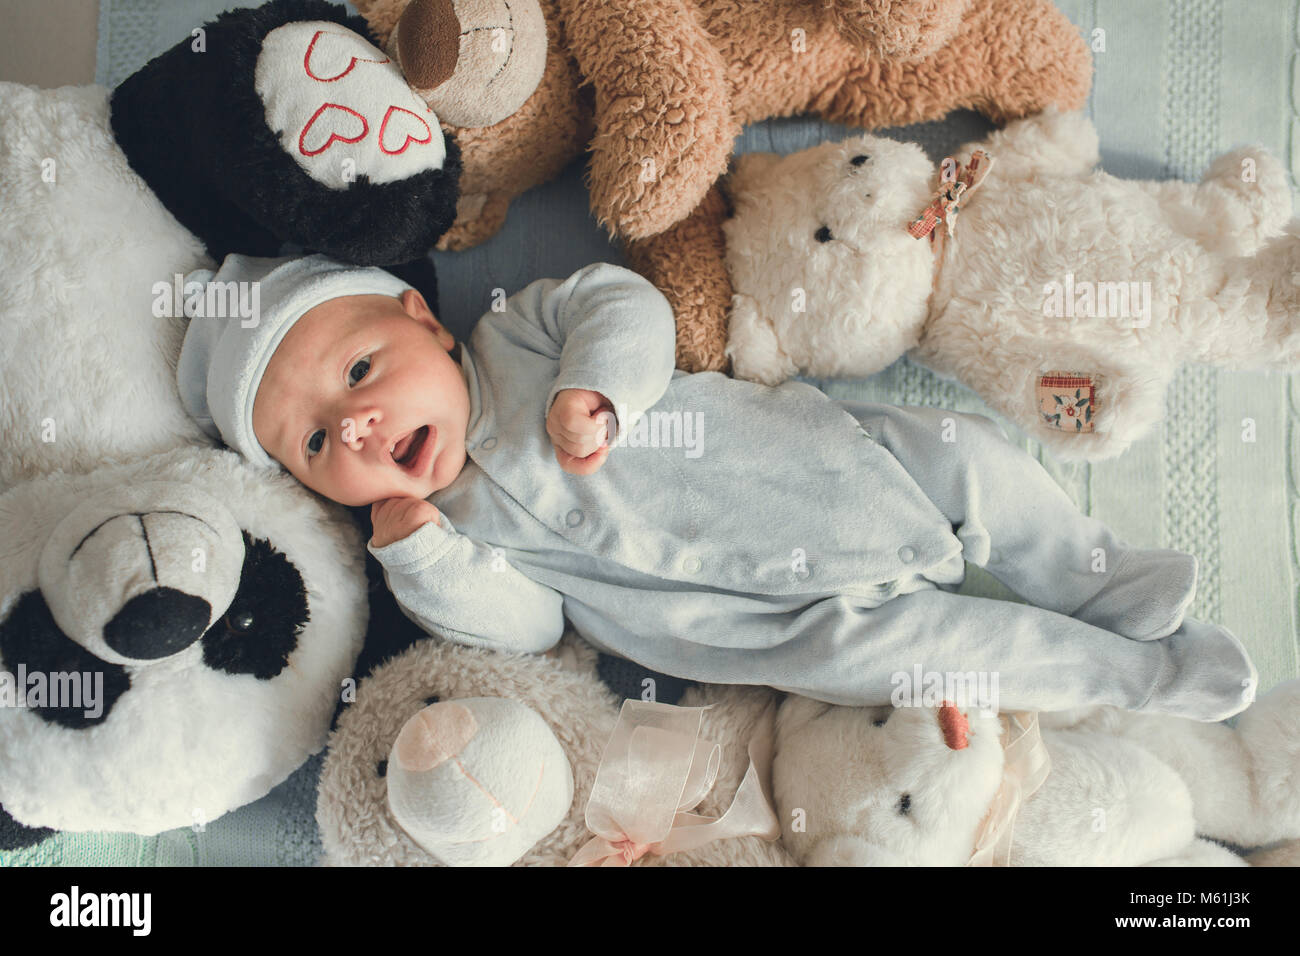 Bebé Recién Nacido Que Duerme Con Un Oso De Peluche Fotos, retratos,  imágenes y fotografía de archivo libres de derecho. Image 71656251